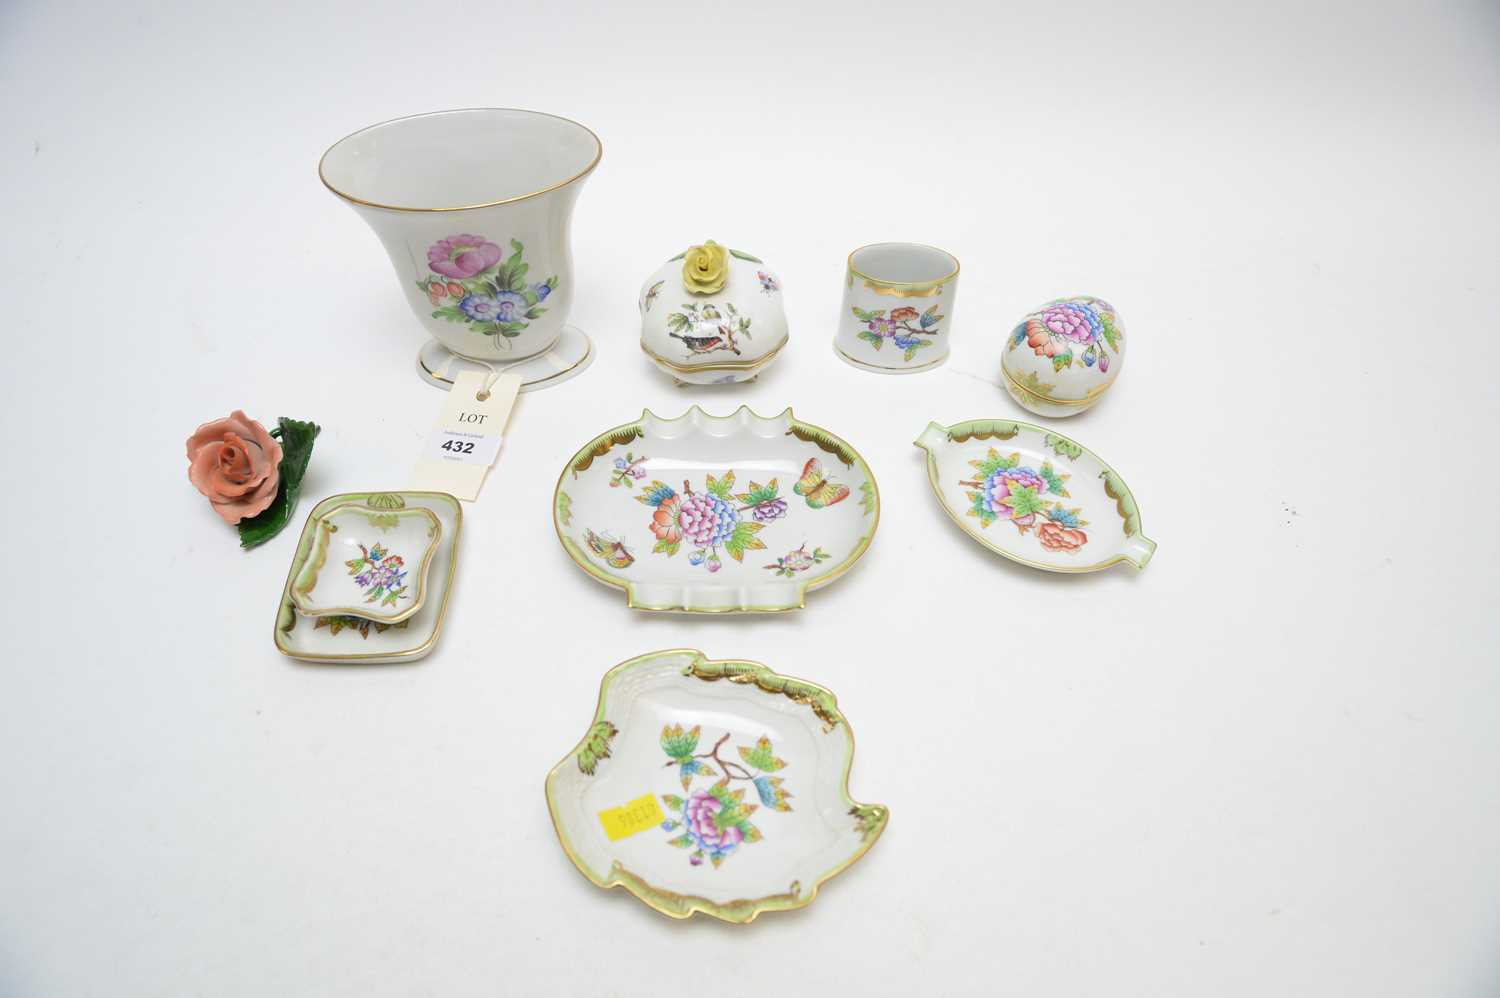 Lot 432 - Herend porcelain